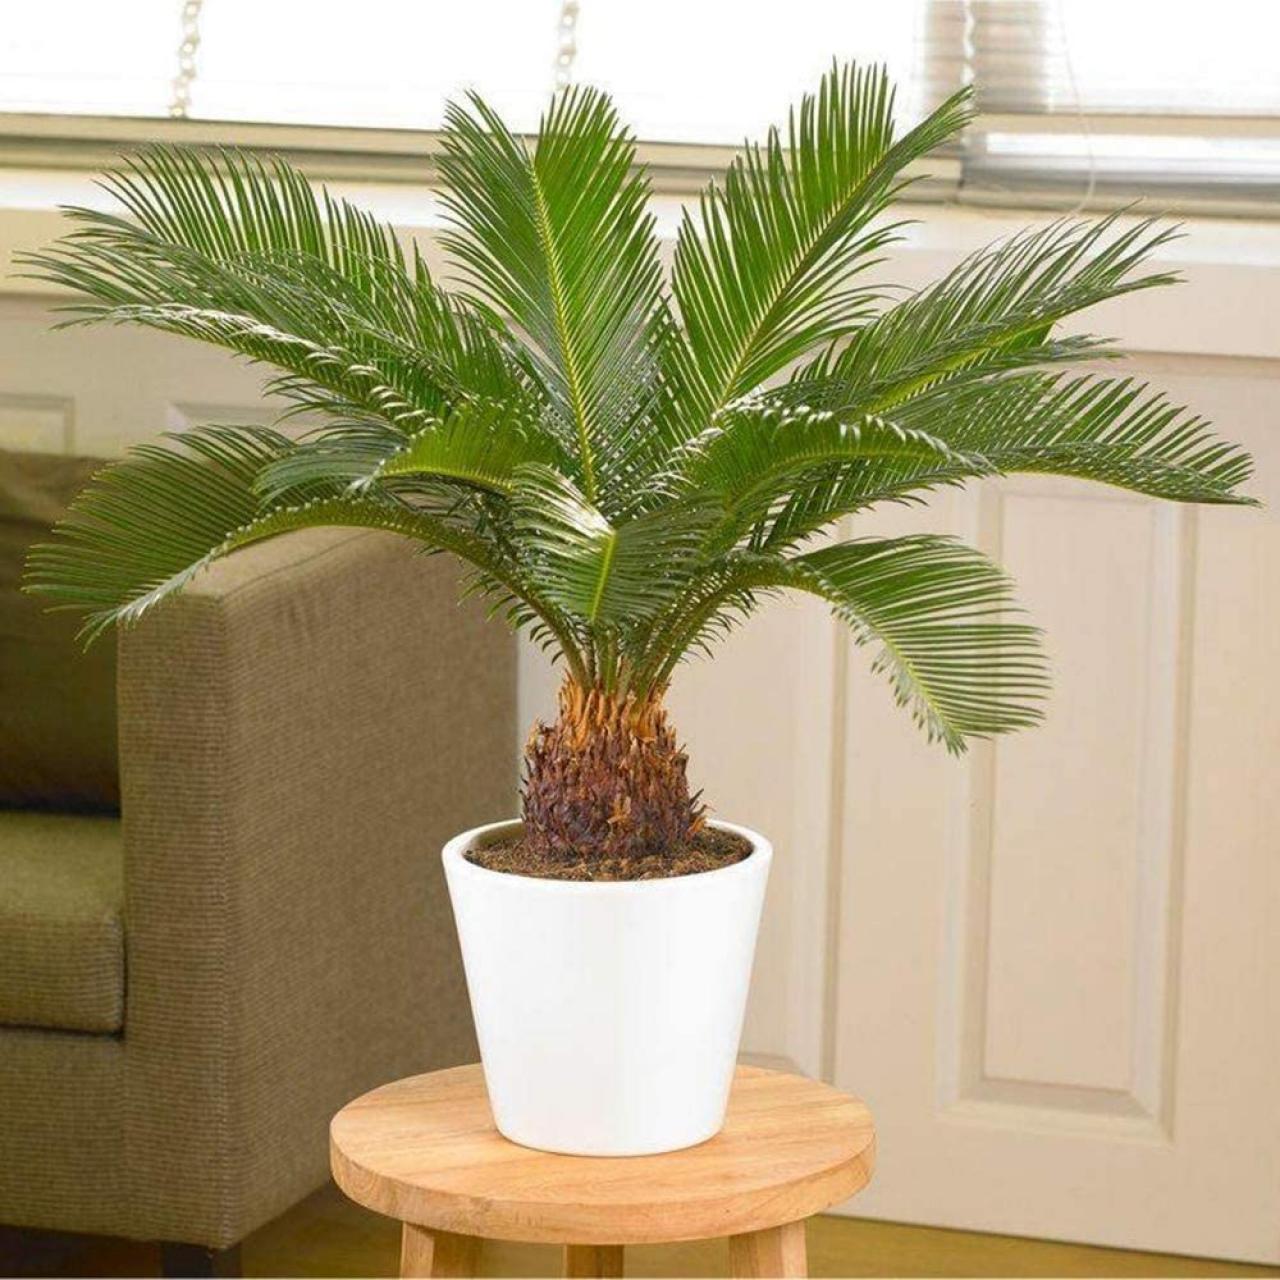 How to Grow Sago Palm  Sago Palm Care  HGTV